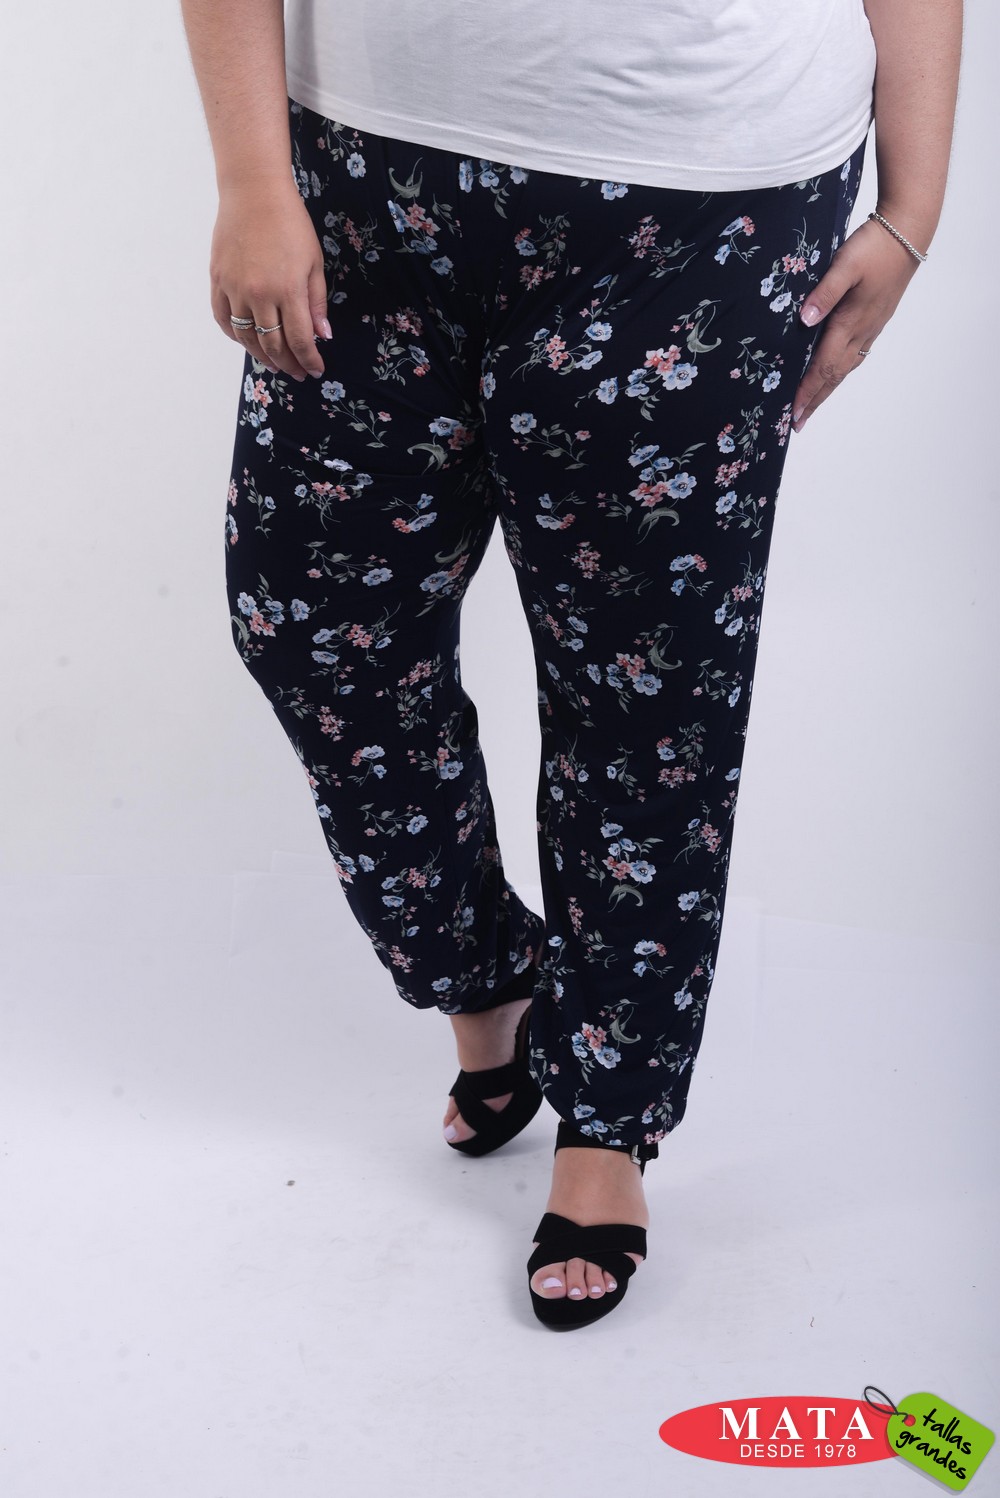 Pantalones mujer tallas grandes goma en la cintura (venta online)